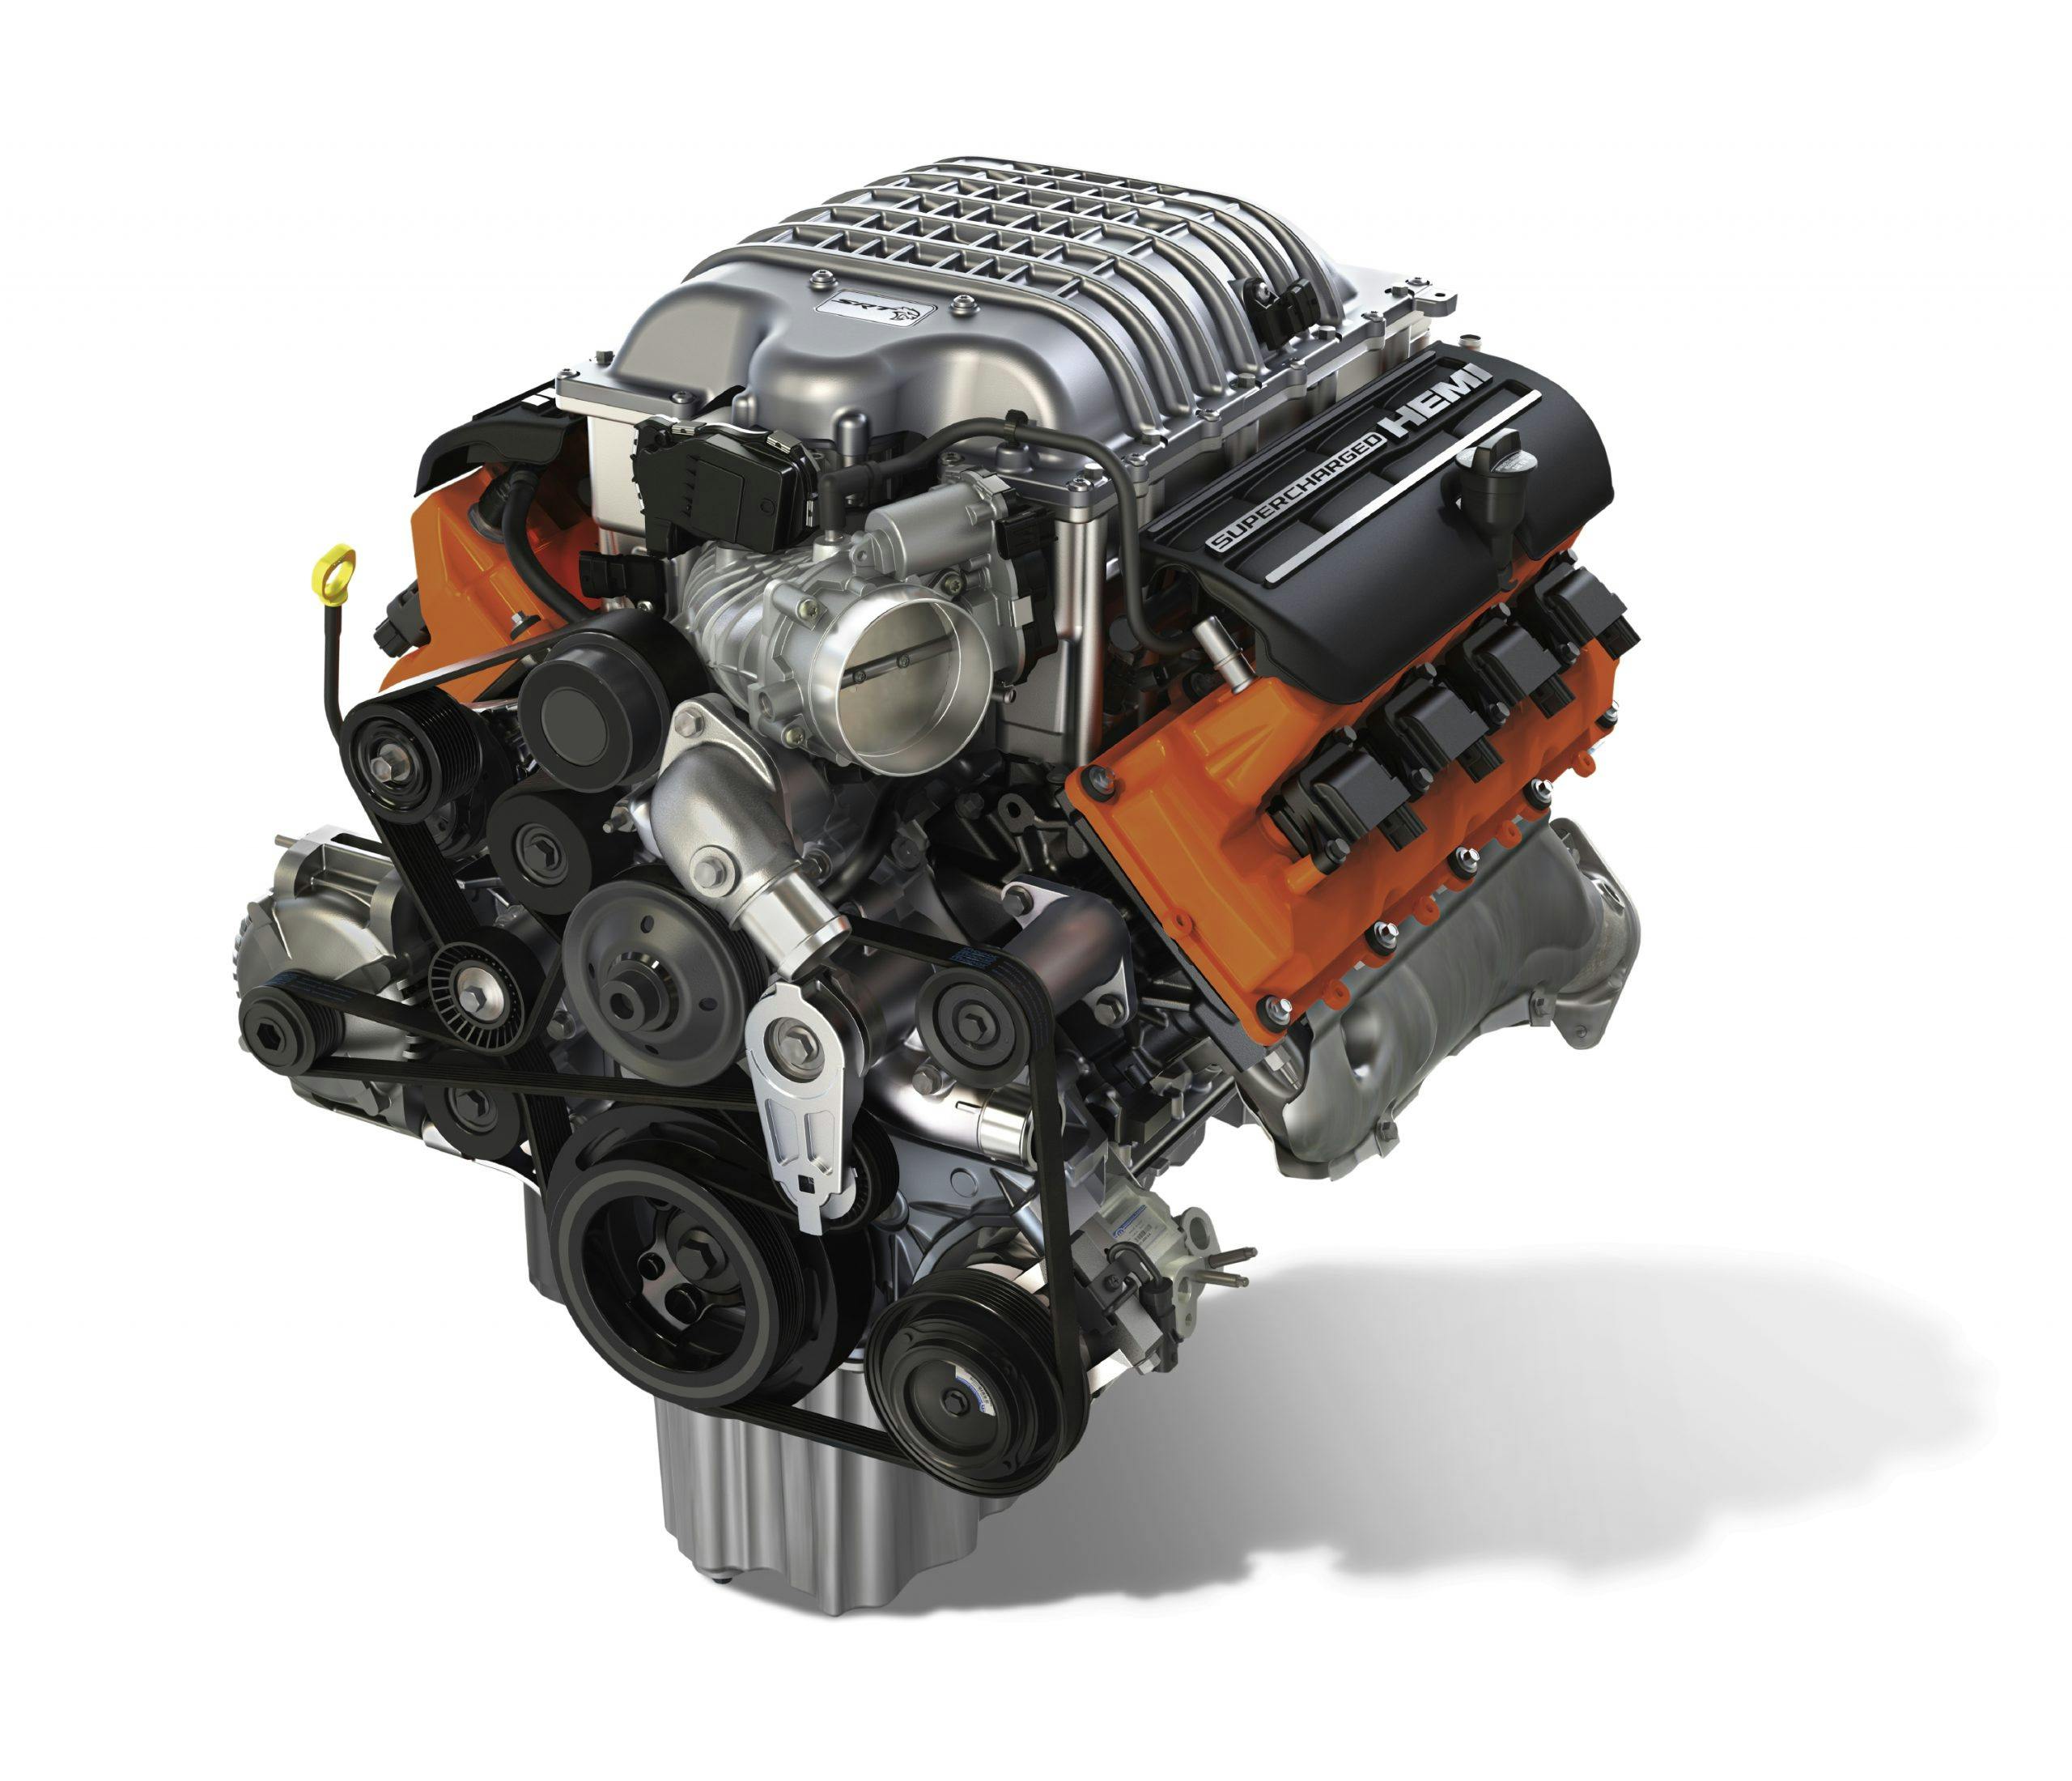 ”Hellcrate” 6.2-liter Supercharged HEMI® V-8 engine